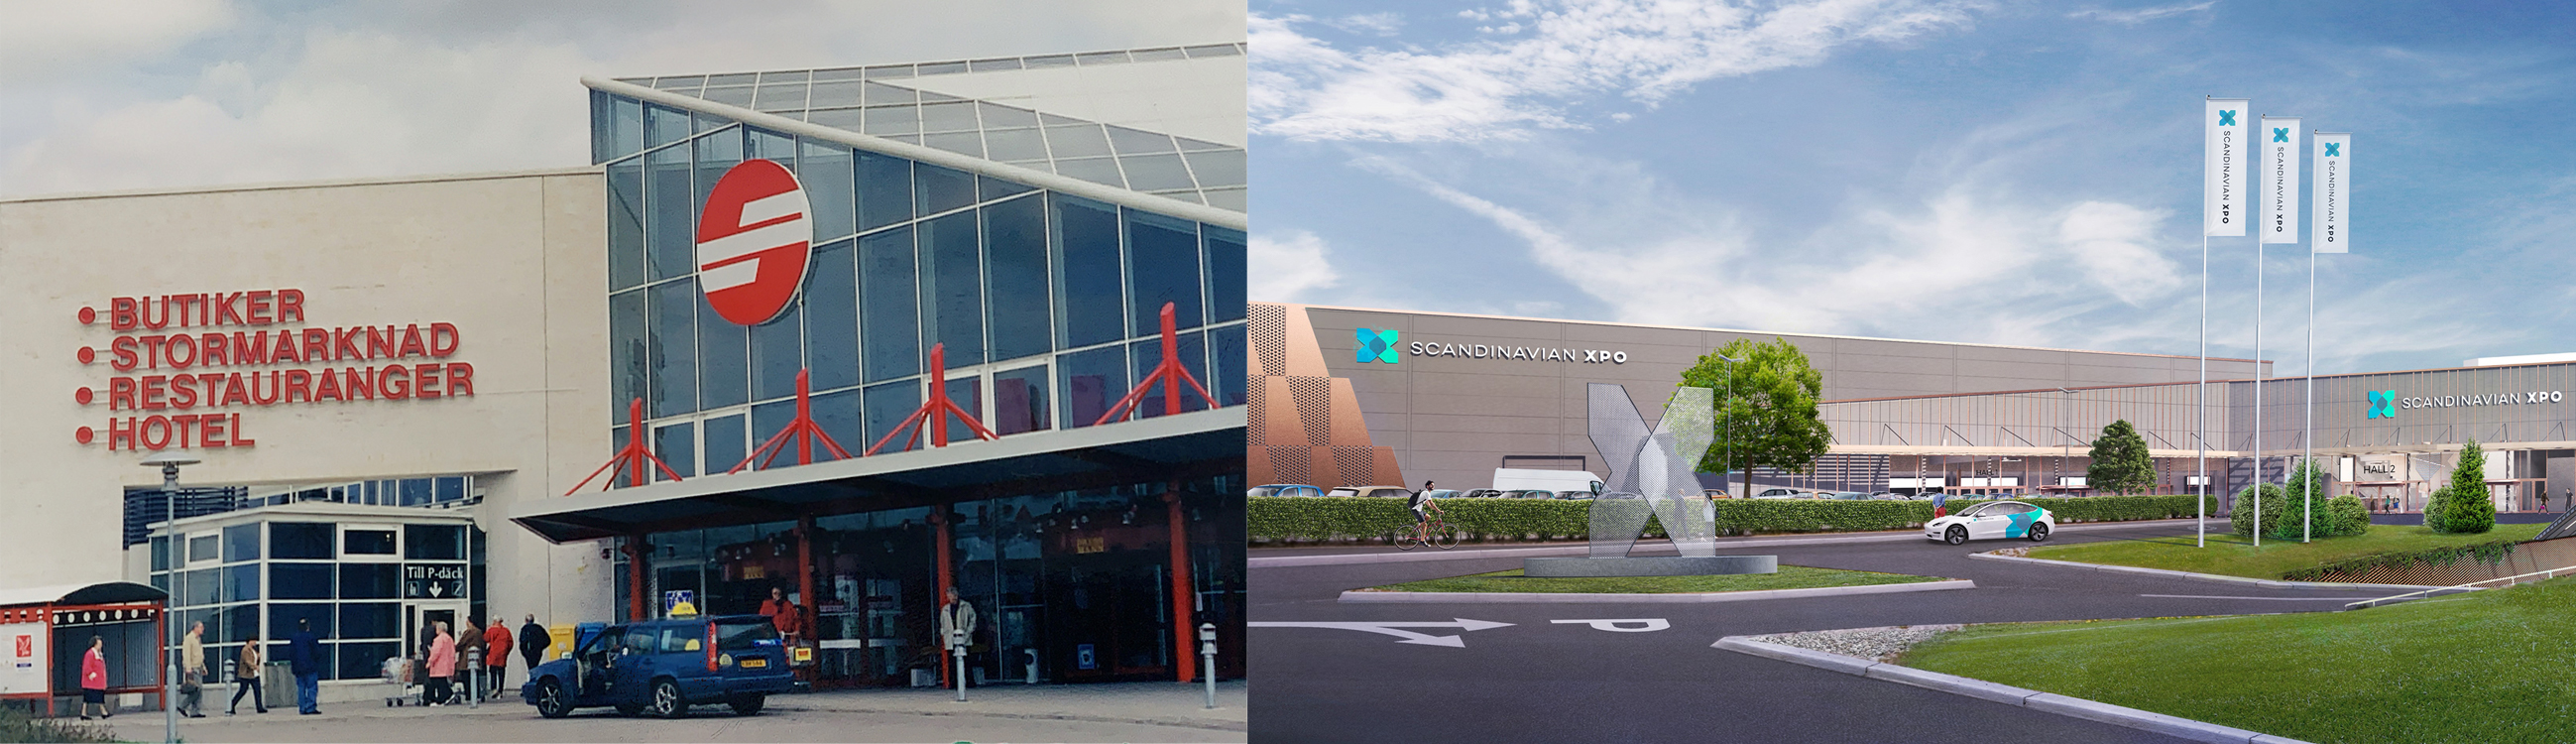 Kollage med bild till vänster: Eurostop Köpcentrum 1998  Bild till höger: Visions bild av nya mötesdestinationen Scandinavian XPO som öppnar årsskiftet 2020/2021.